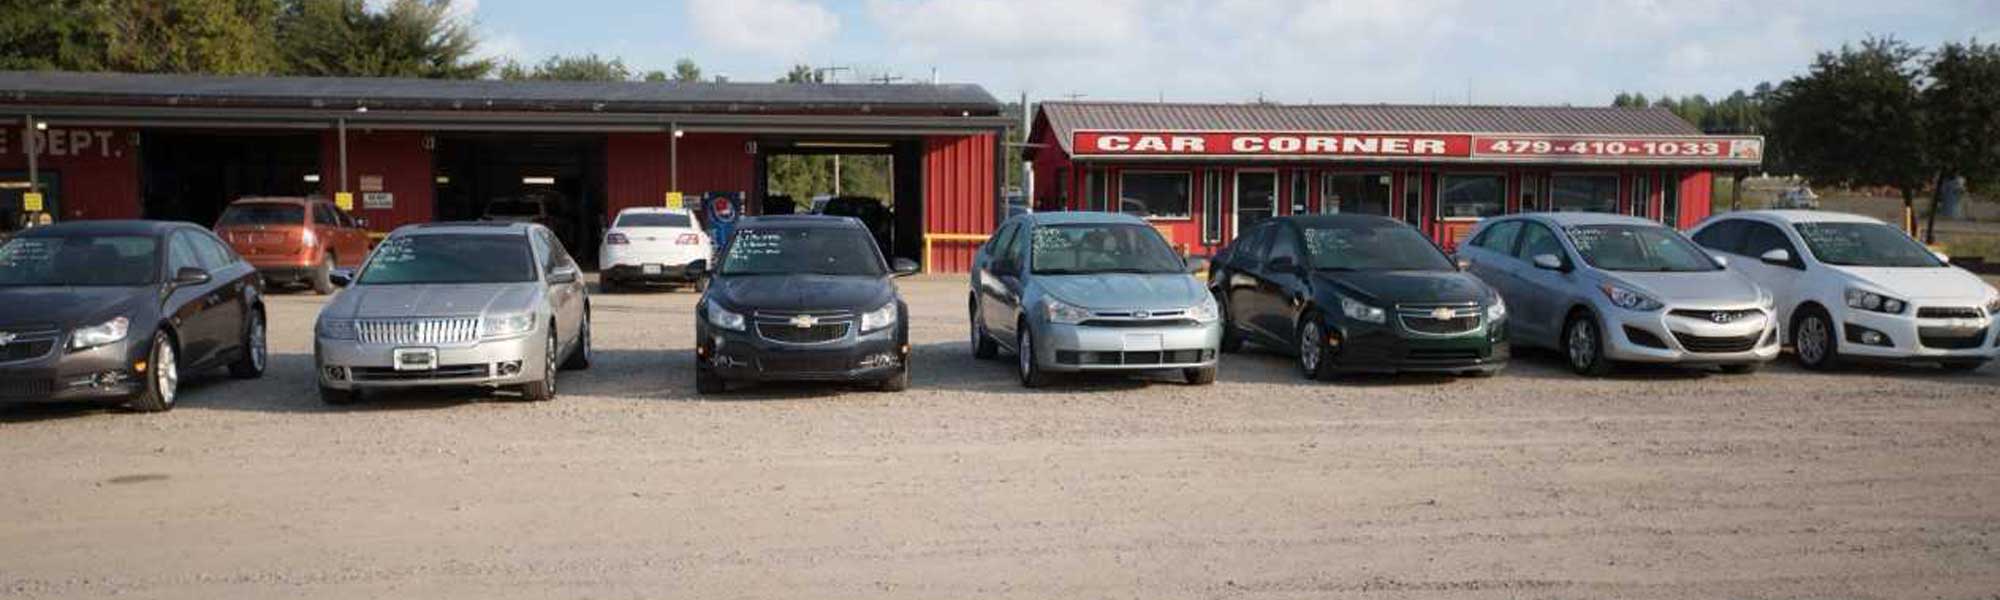 car dealerships on van buren